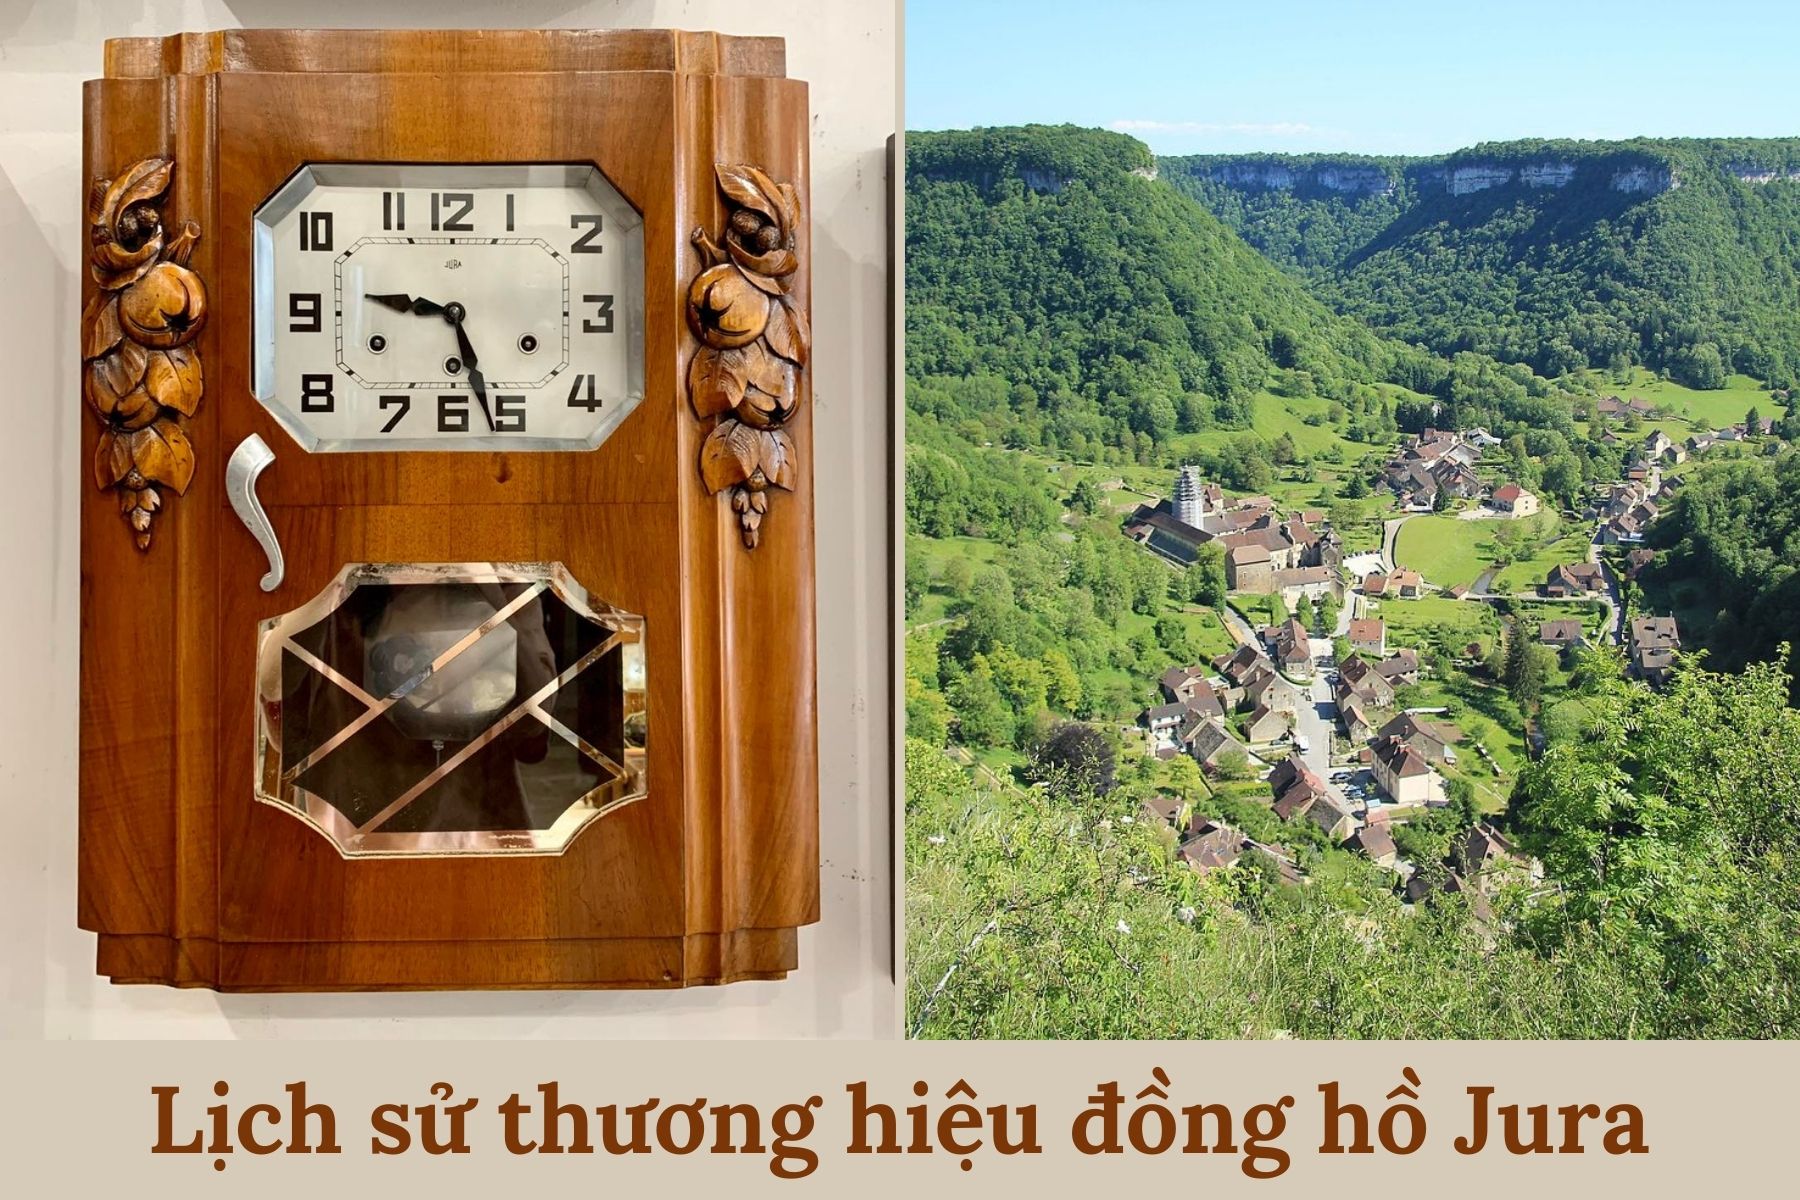 Lịch sử thương hiệu đồng hồ bidan - Khởi nguồn từ ngôi làng Morbier 